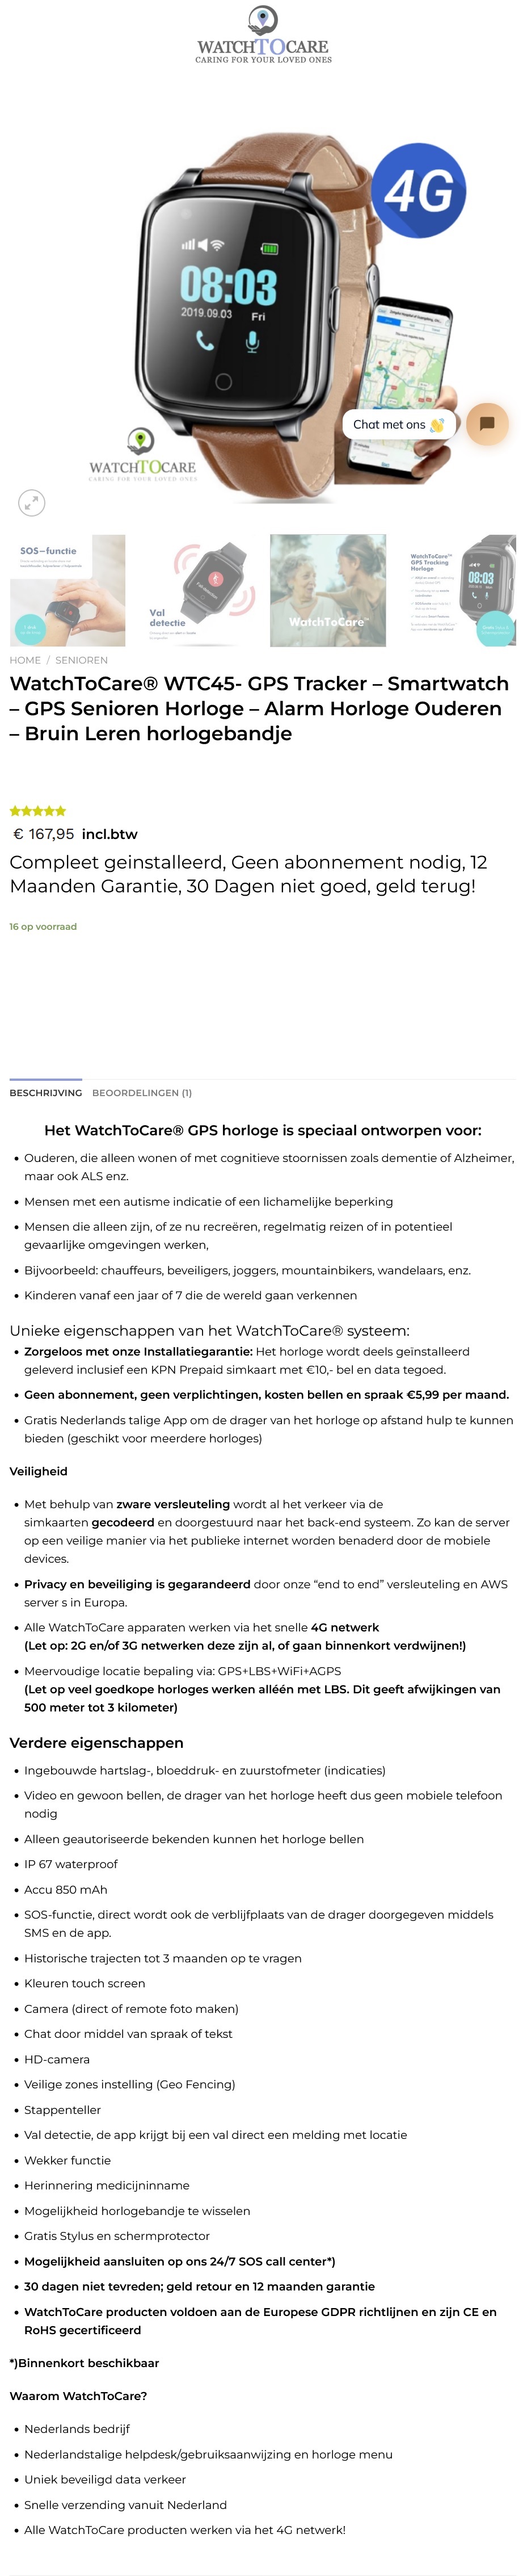 toegevoegd document 2 van WatchToCare smartwatch WTC45 